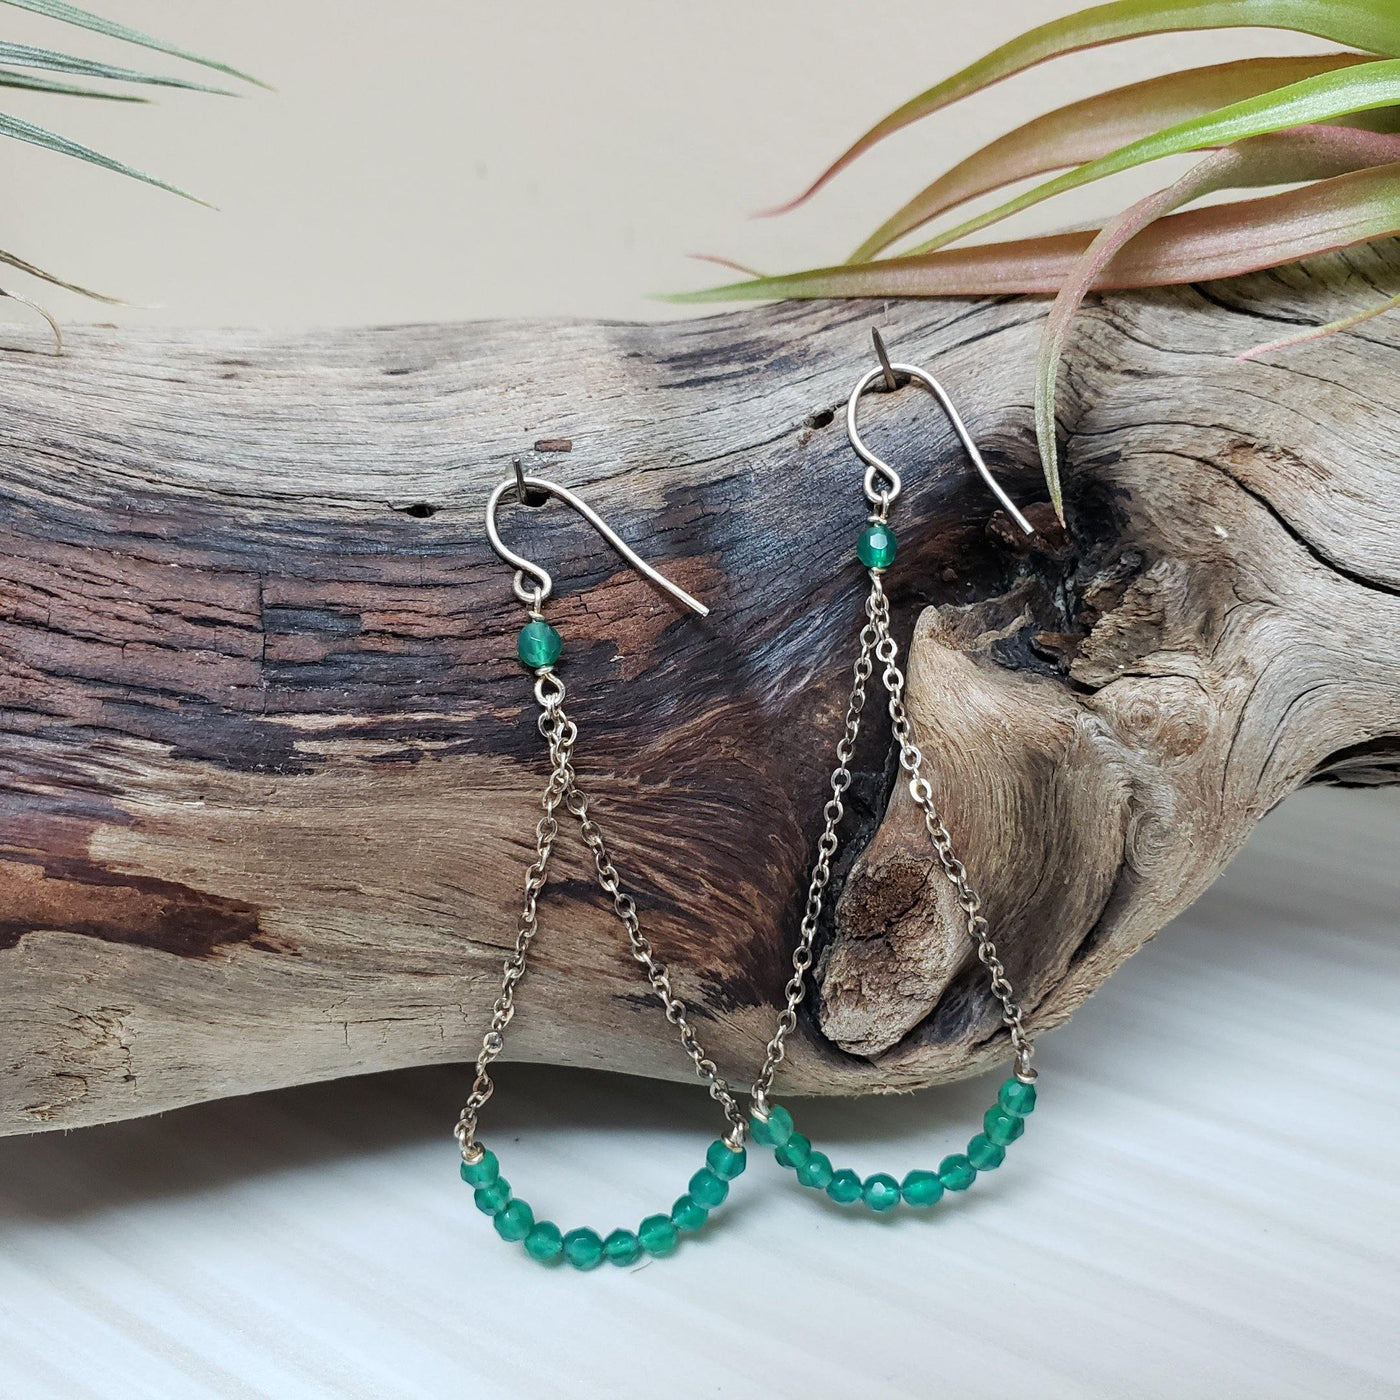 Glamorous green onyx chandelier earrings - LB Designs